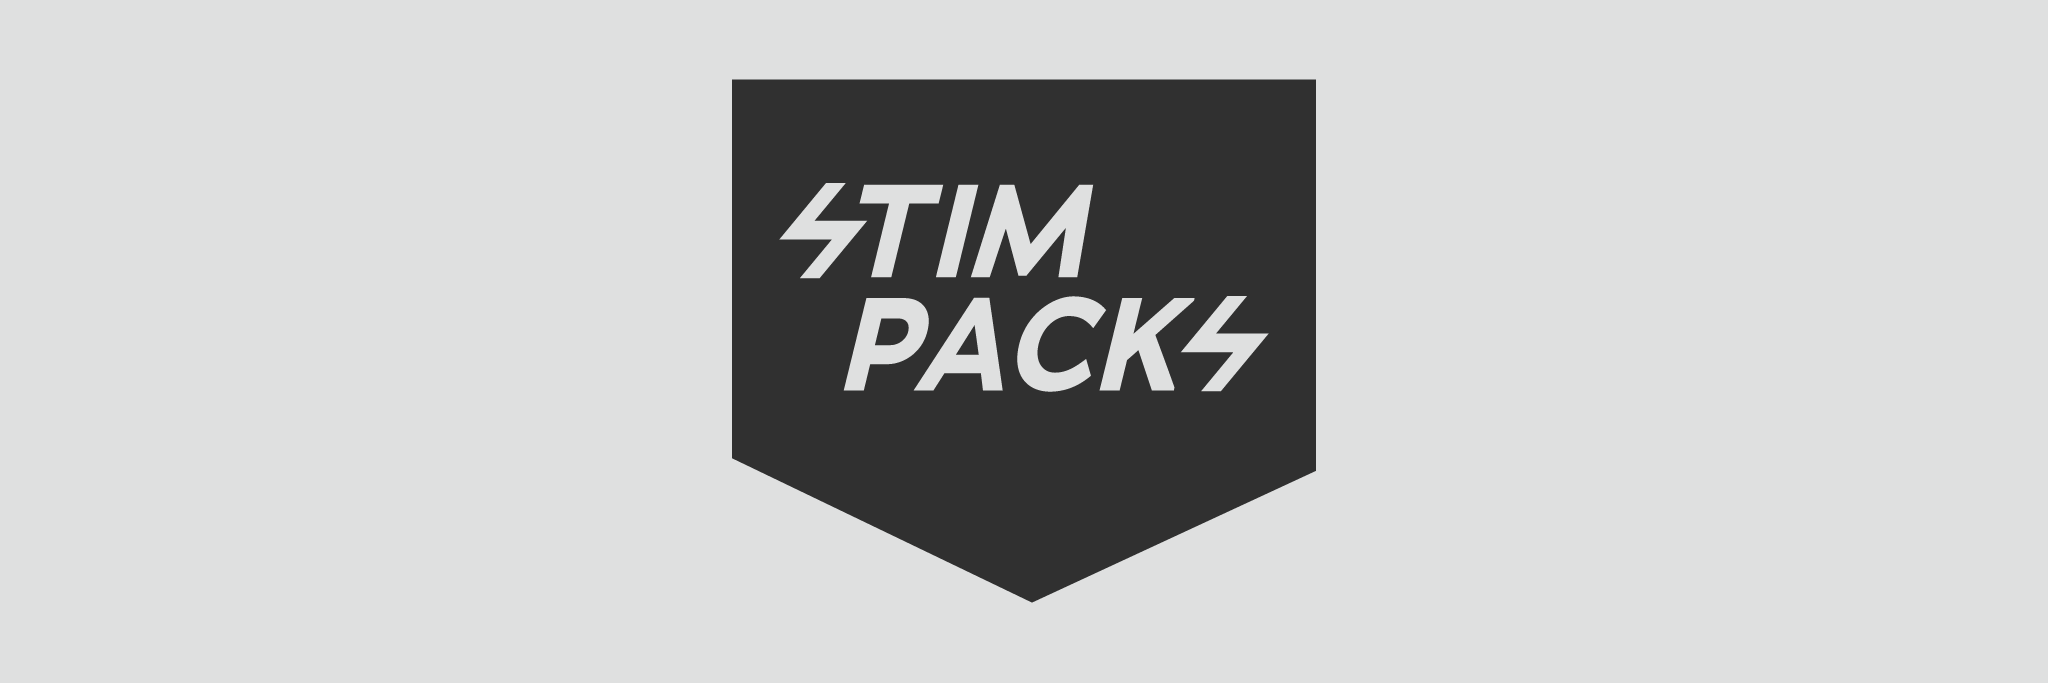 Stimpacksロゴ